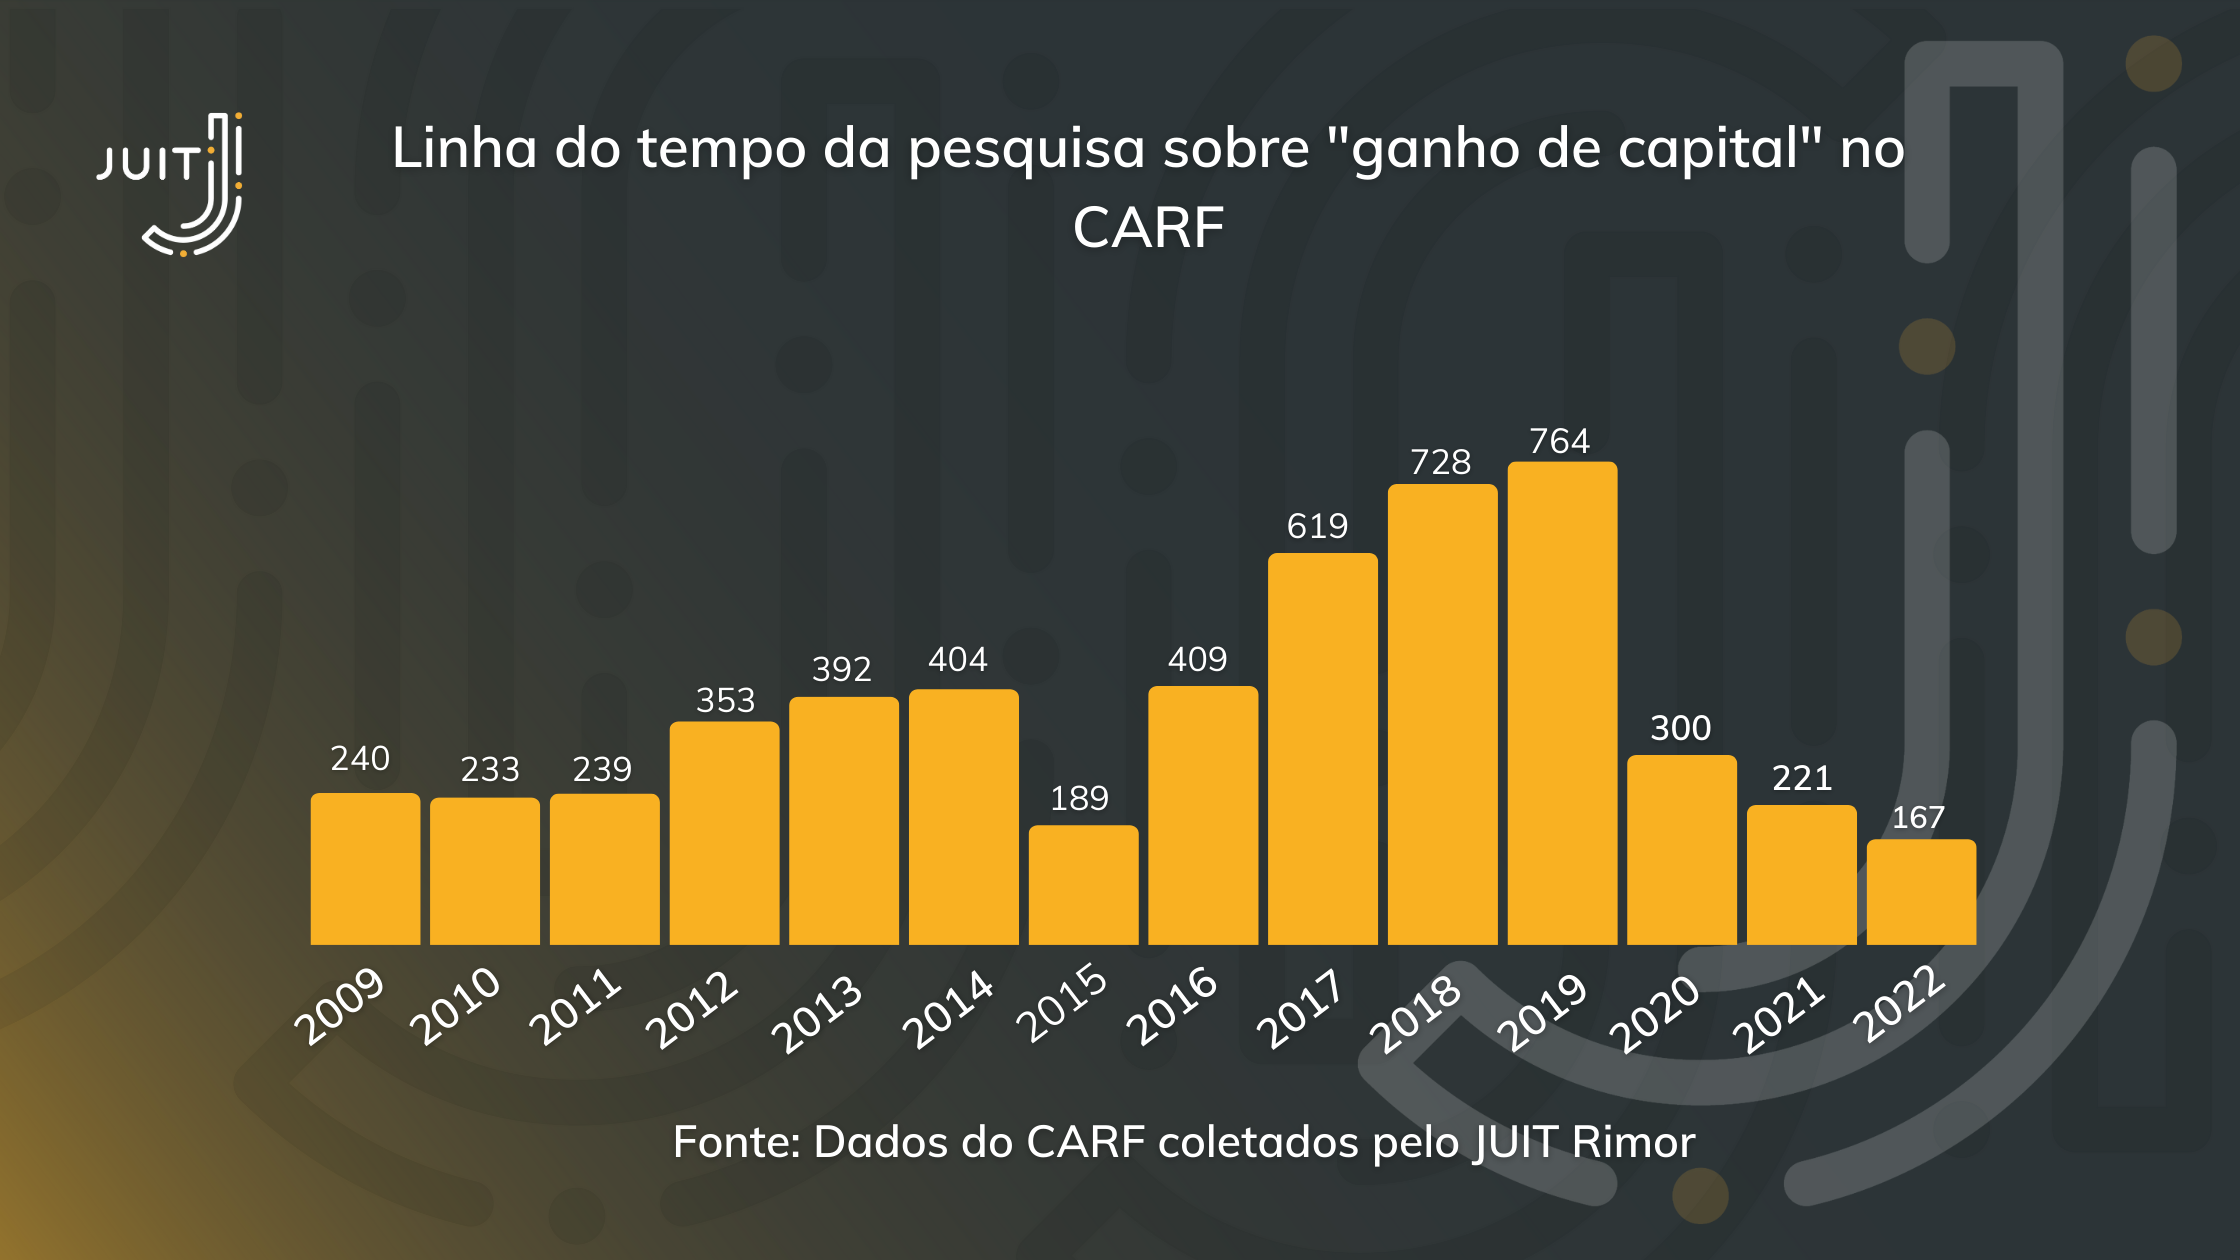 Linha do tempo dos julgados sobre “ganho de capital” no CARF de acordo com o JUIT Rimor